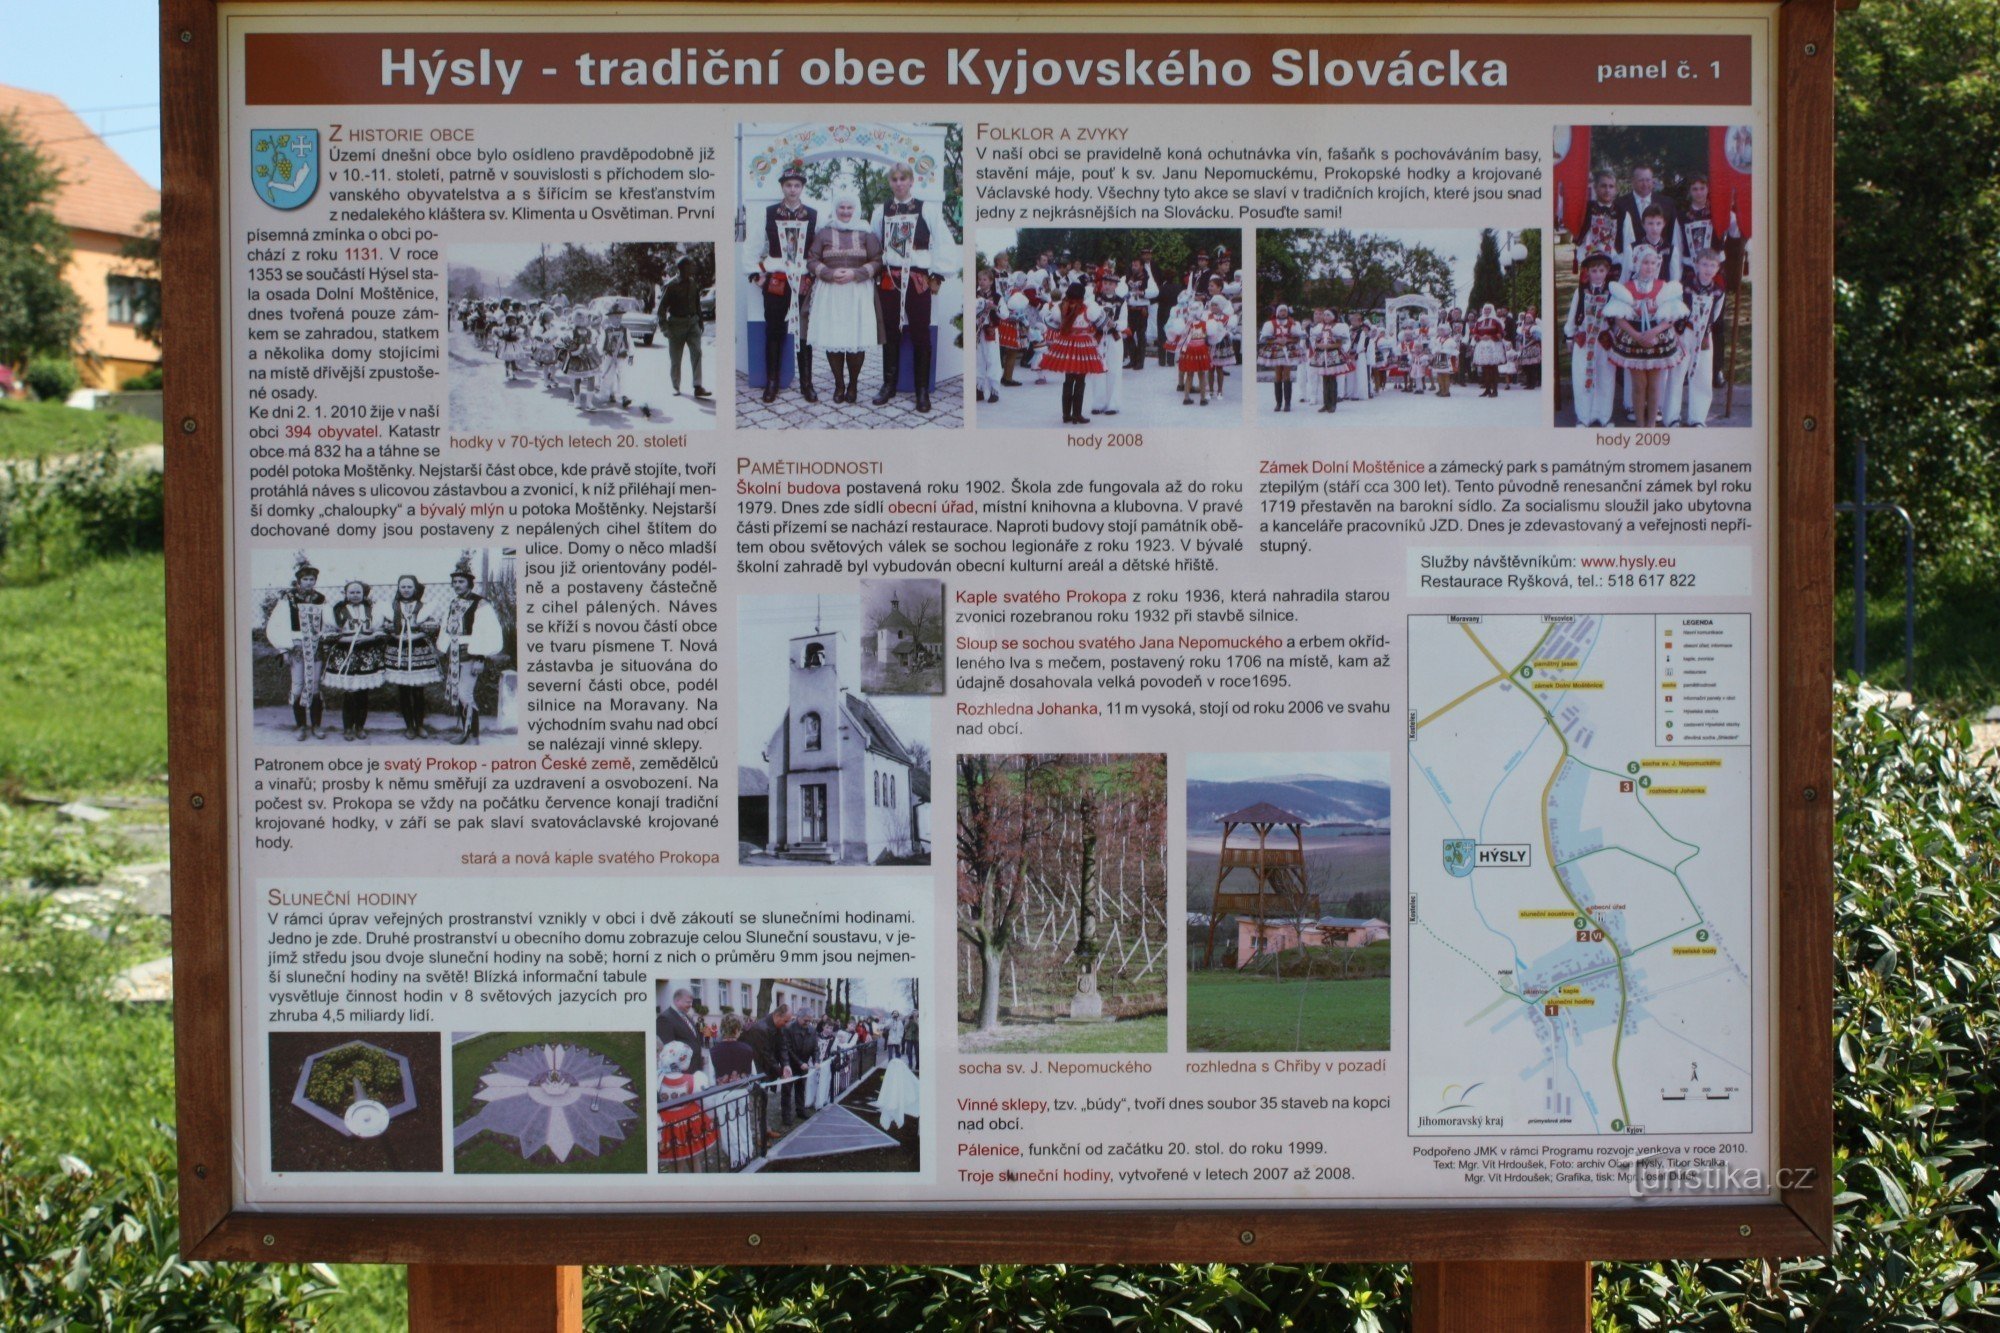 Хыслы, туристически интересная деревня Словацкой